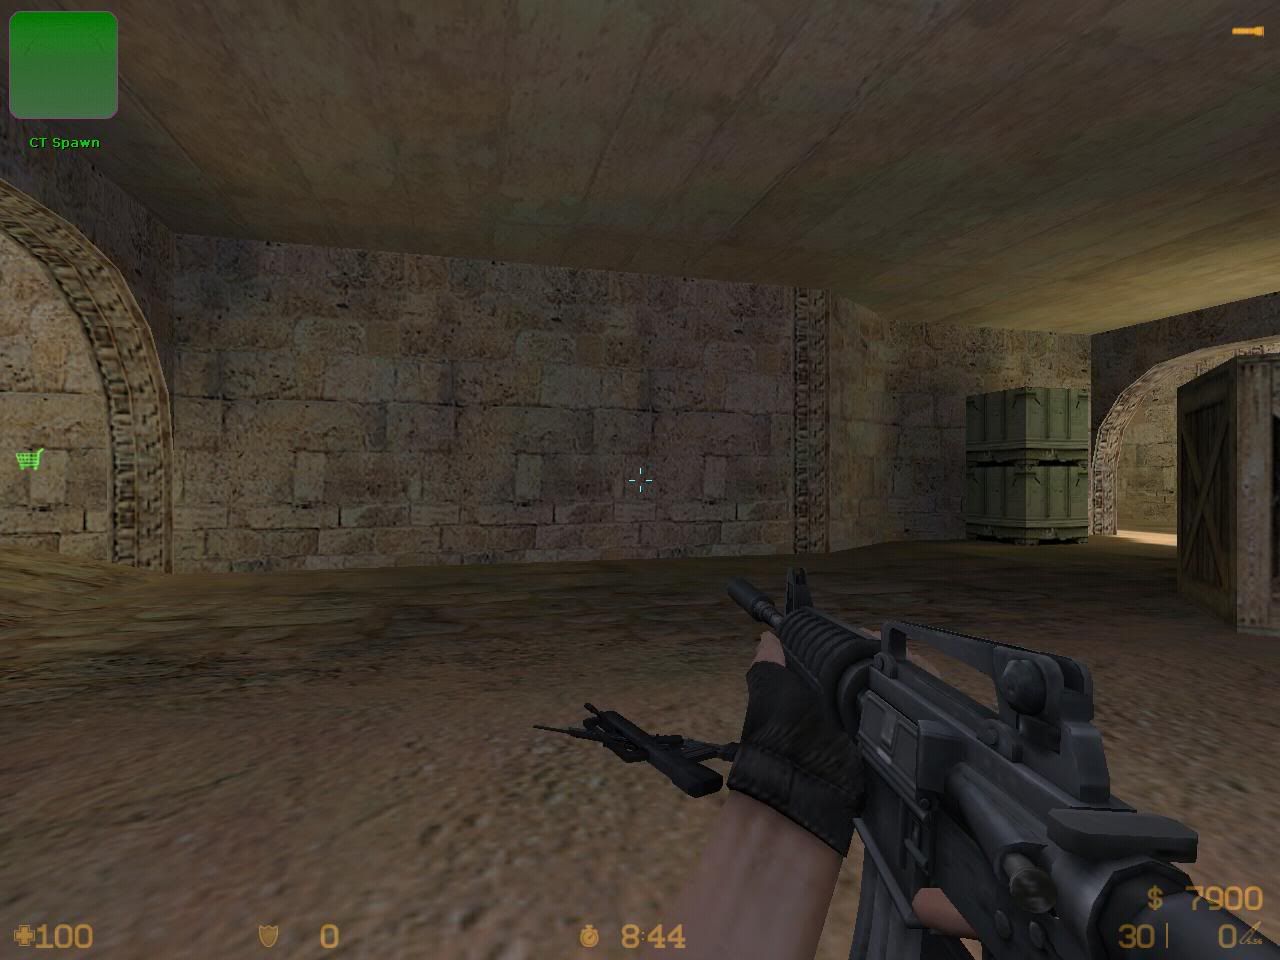      1.6  Counter-Strike United v1 de_dust20015.jpg